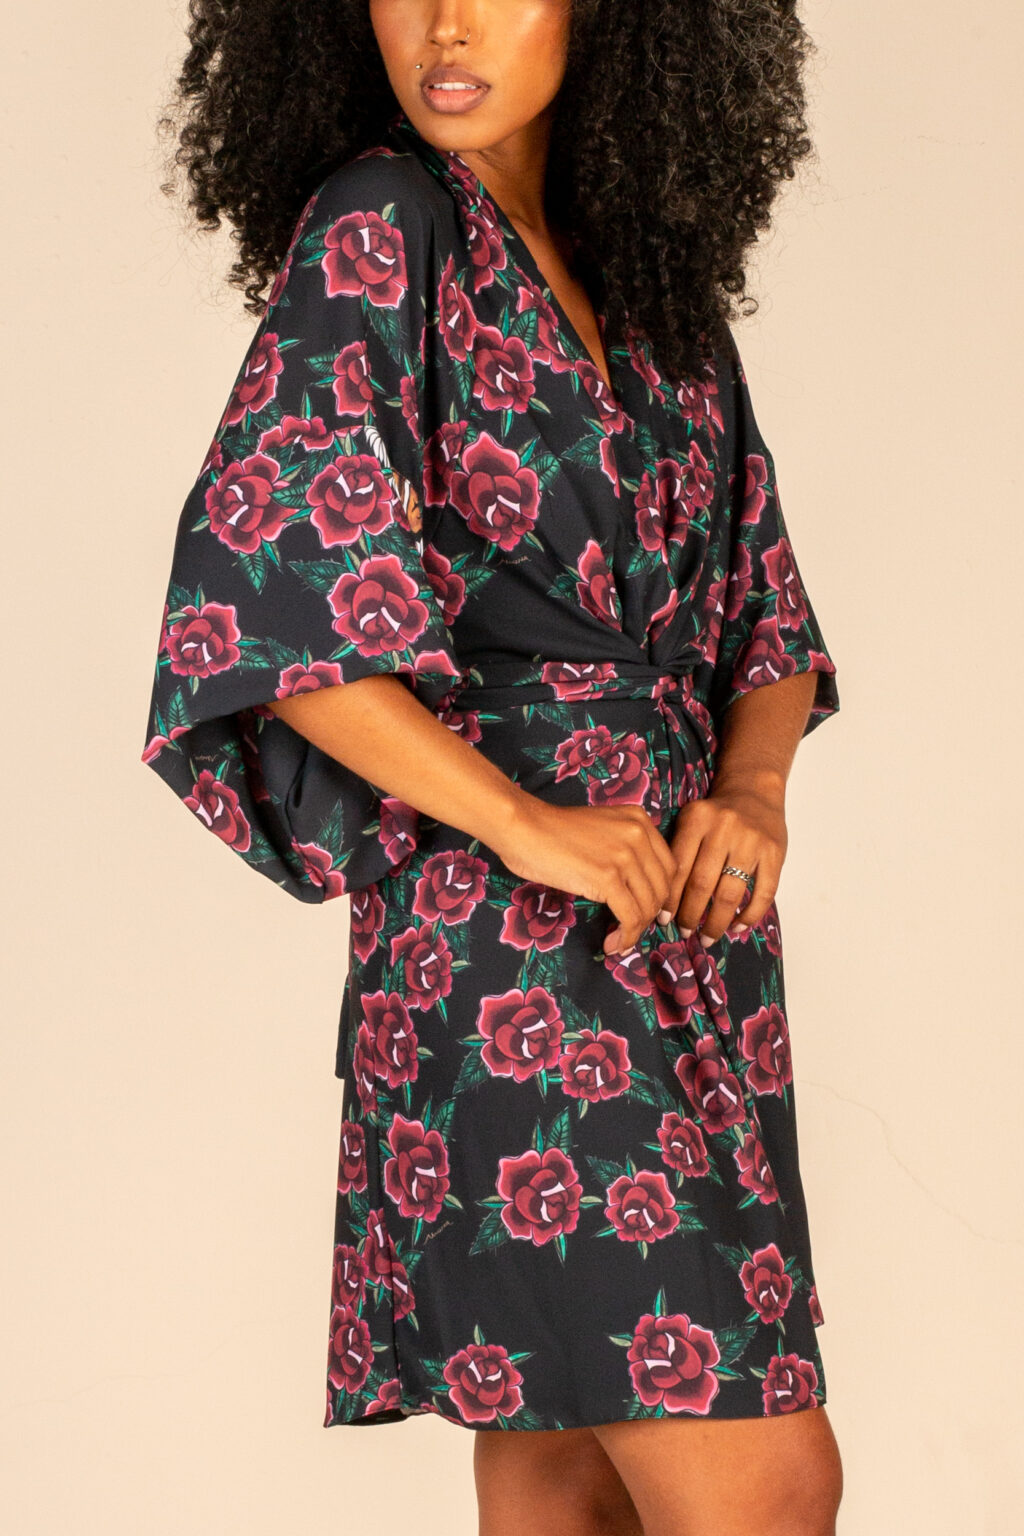 Mulher morena usando kimono curto manga curta com faixa de amarração na cintura estampa exclusiva preta com rosas e tigre conforto praticidade elegância terceira peça kimono Carmem maria sanz kimono quimono